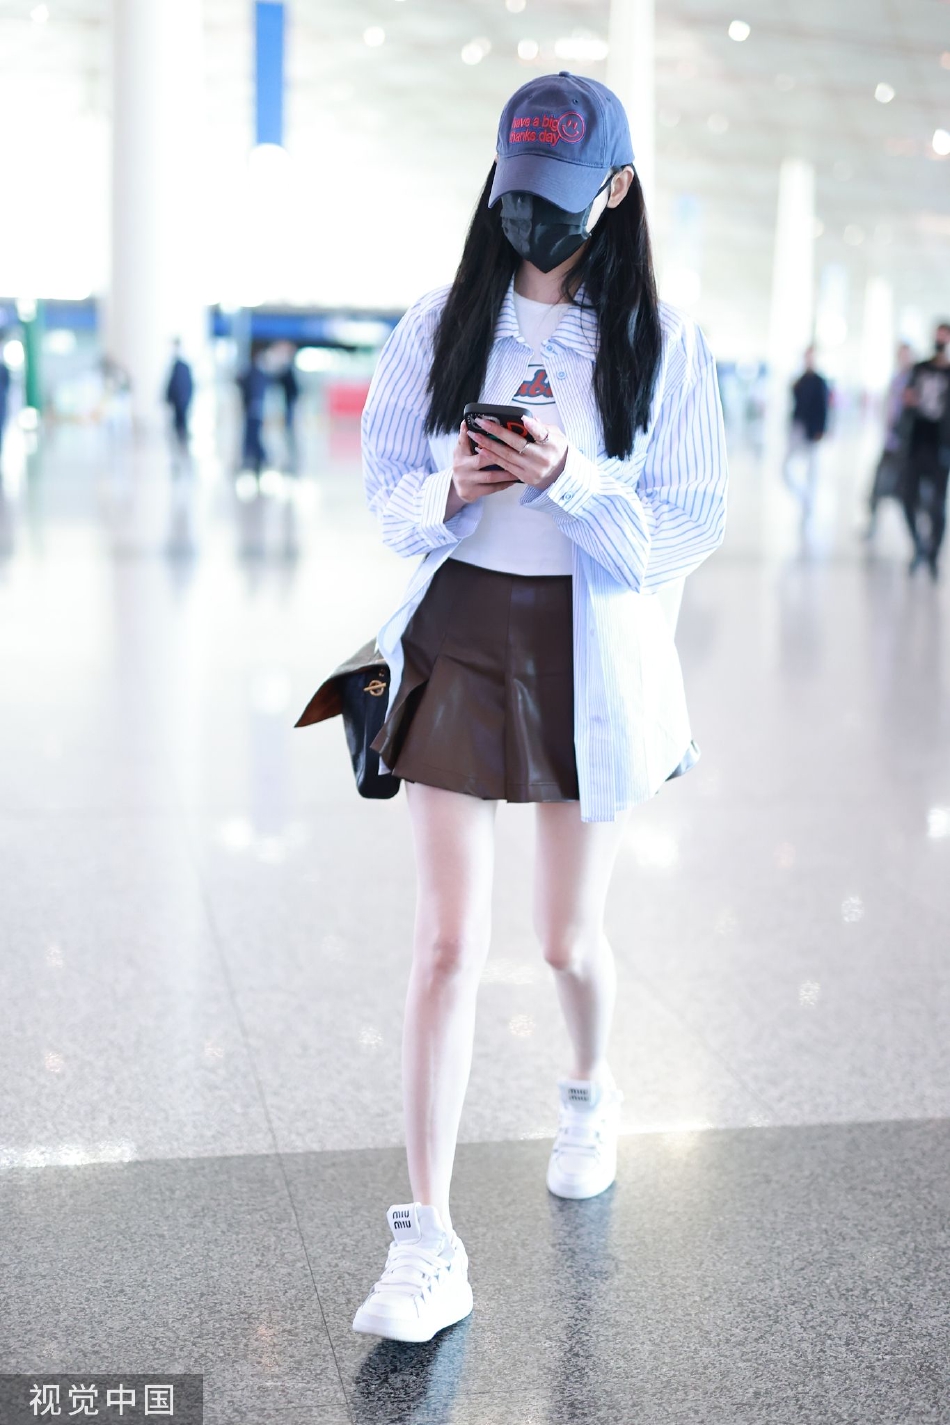 张天爱现身机场造型甜美 身穿衬衫搭配短裙秀白皙长腿封面图